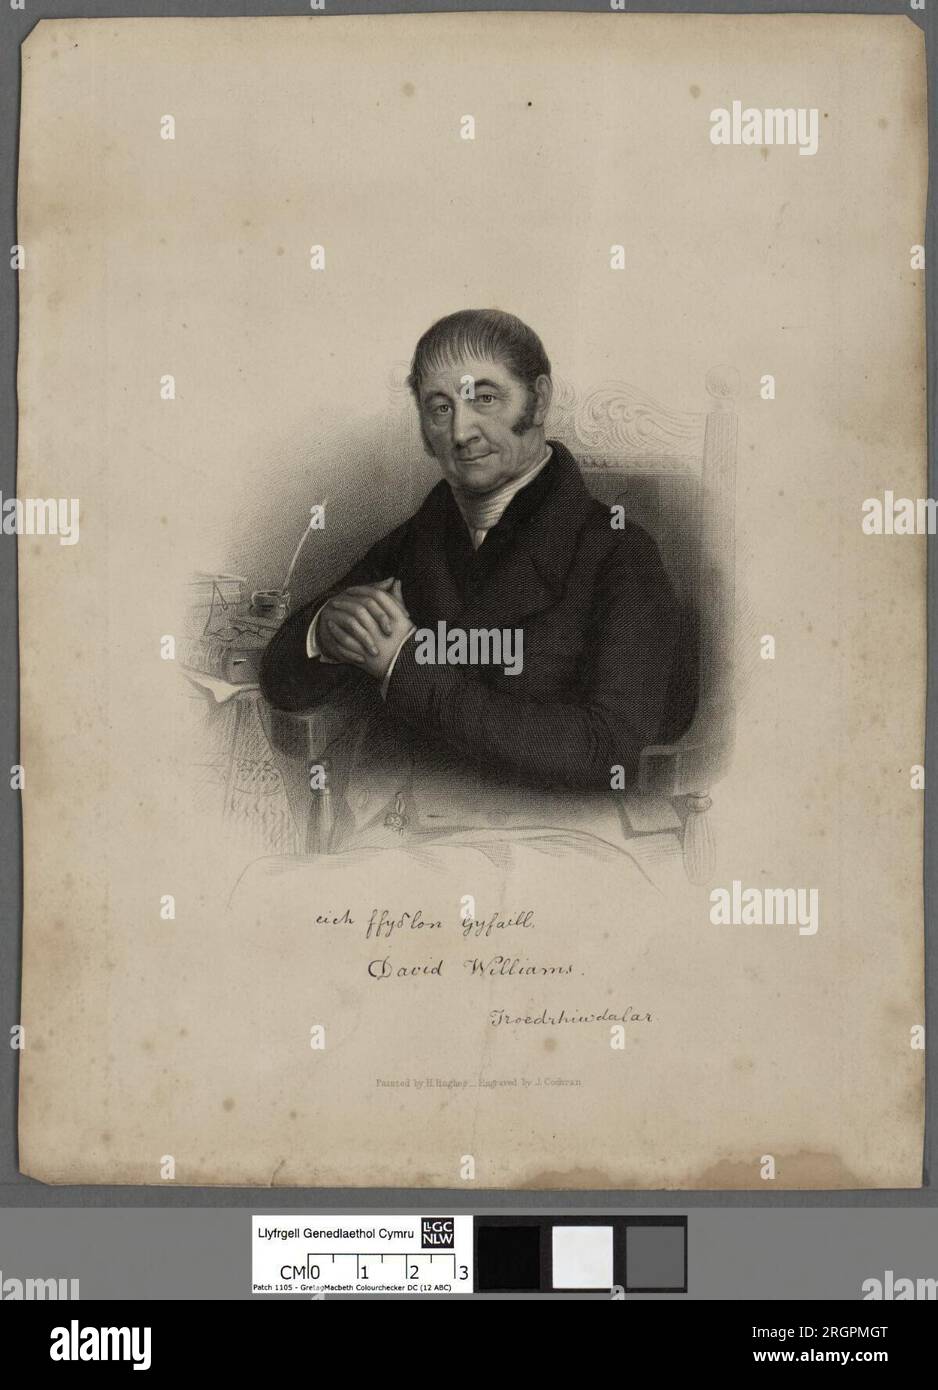 David Williams, Troedwhiwdalar zwischen 1854 und 1865 von John Cochran Stockfoto